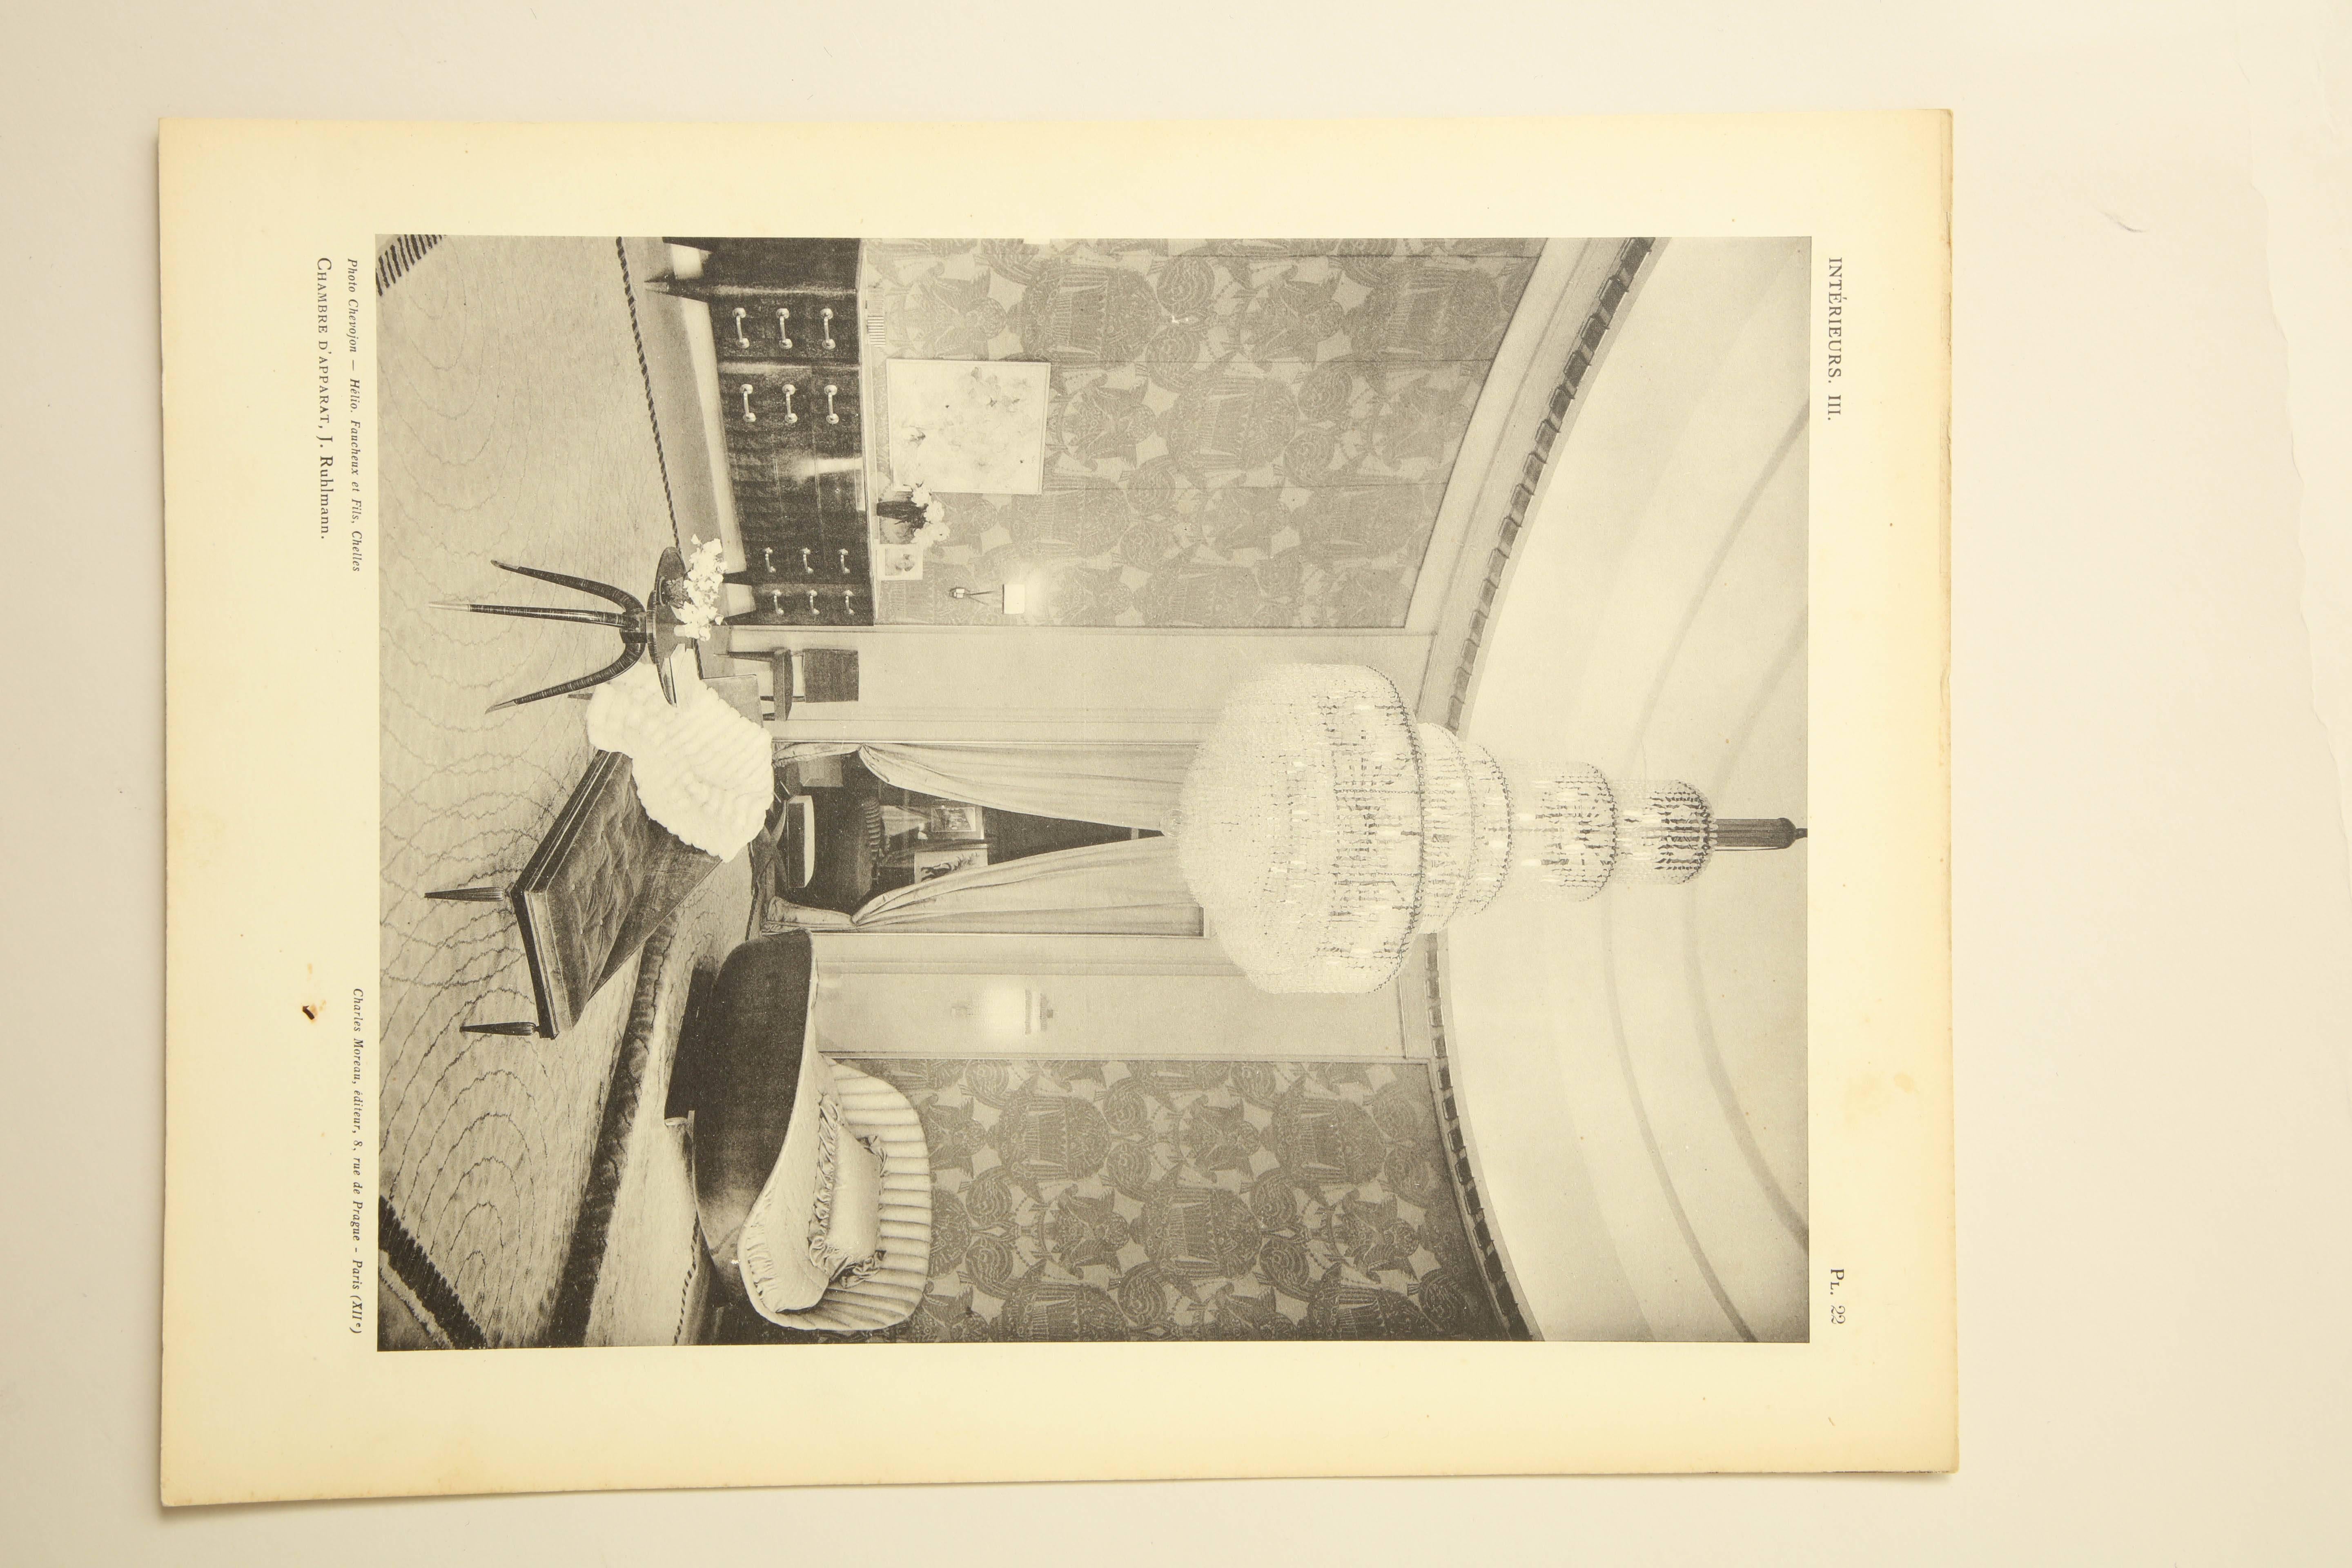 Paper “Interieurs au Salon des Artistes Decorateurs – Paris 1928” by Rene Prou For Sale